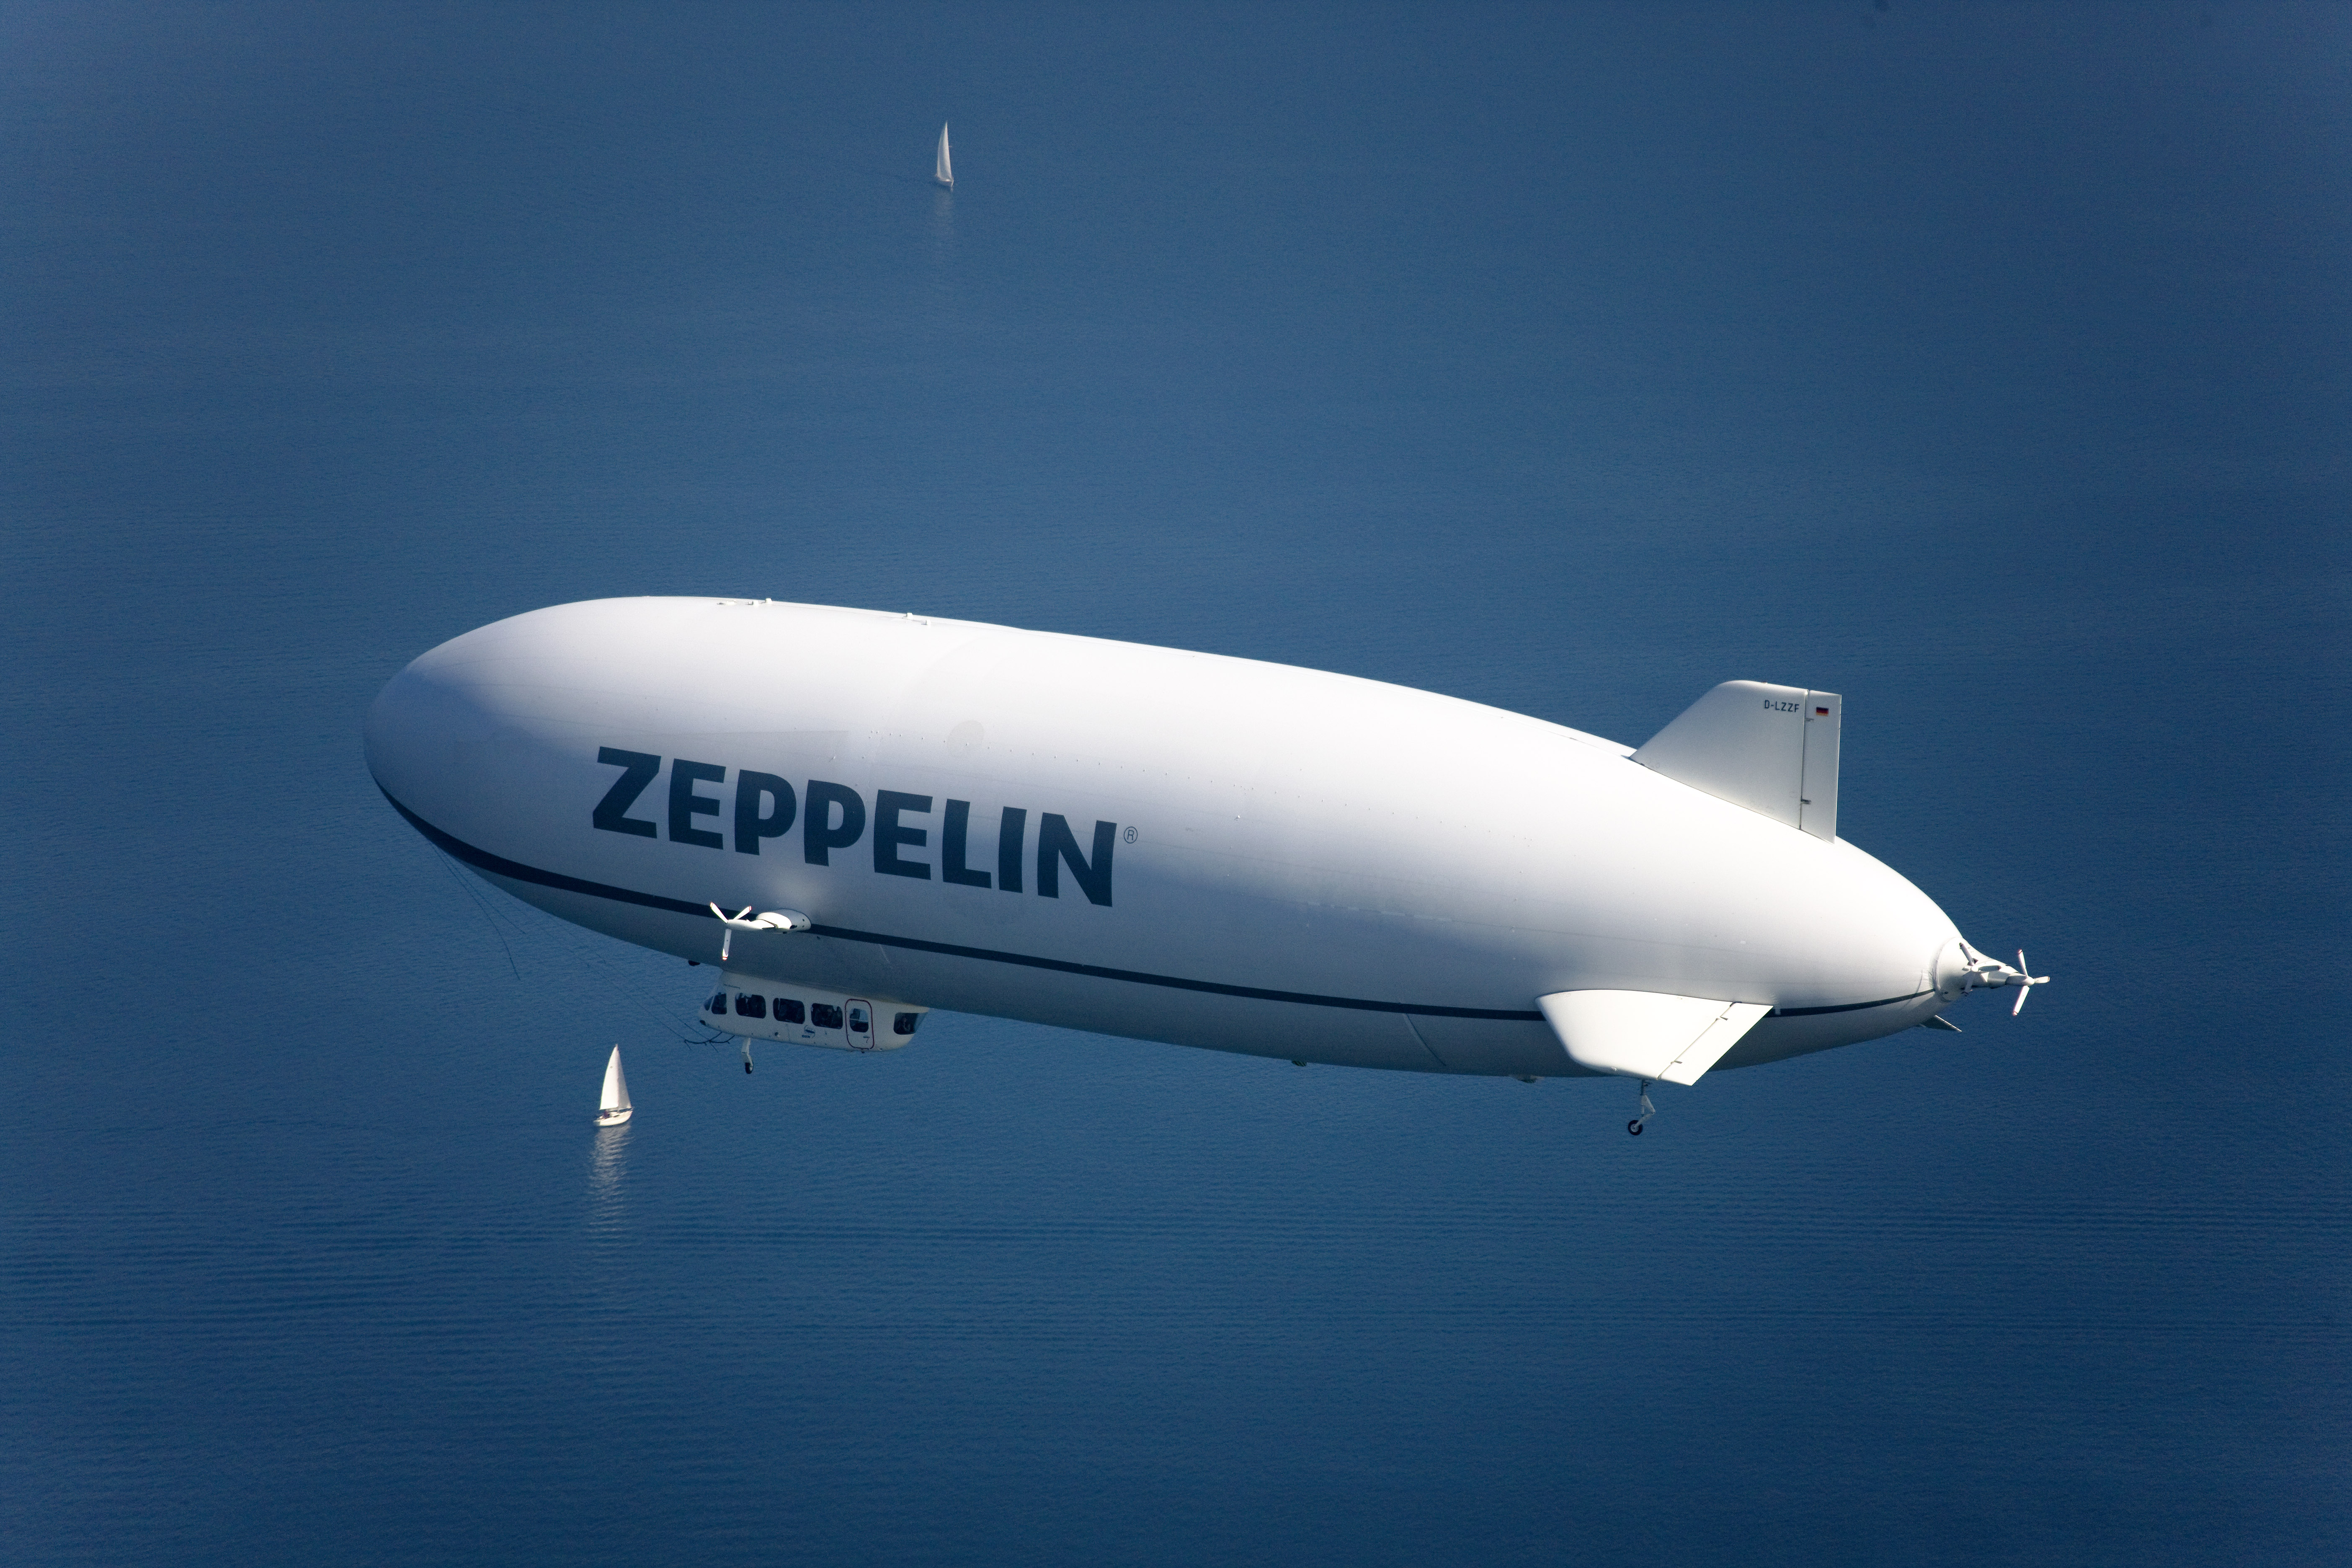 Zeppelin LZ N07-100